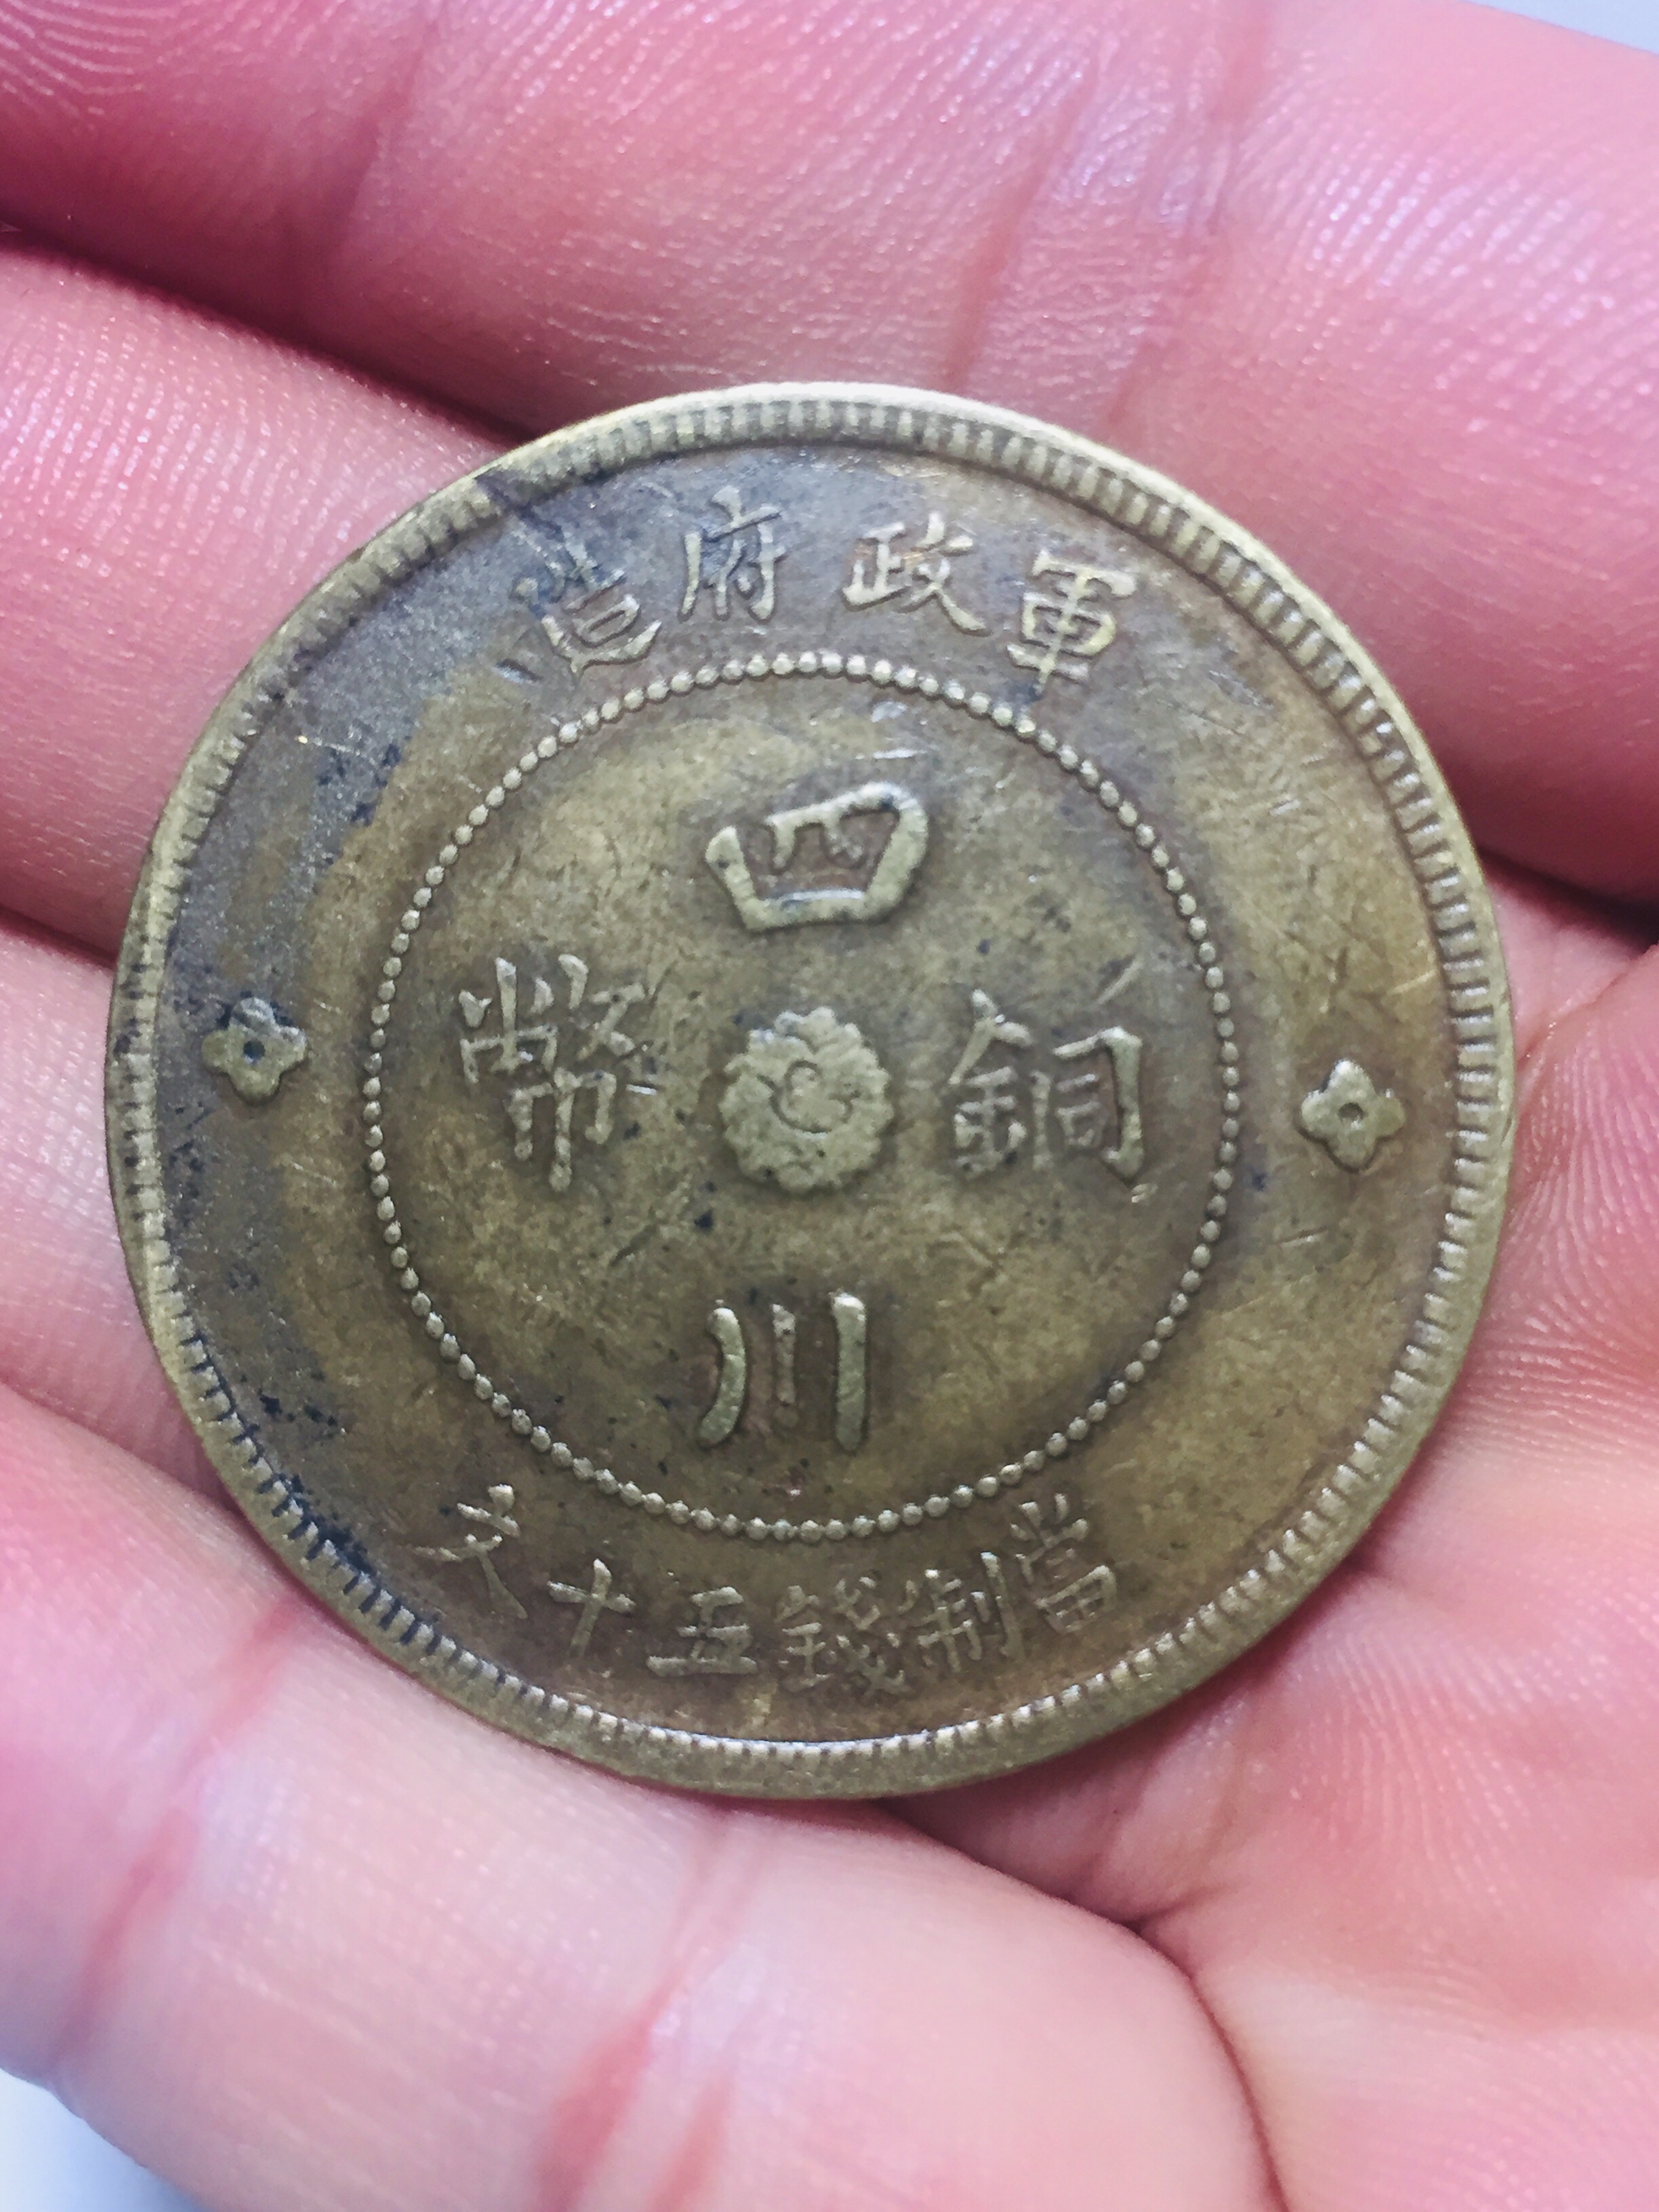 ニューファンドランド(カナダ) 50セント銀貨(1874年,ヴィクトリア女王)